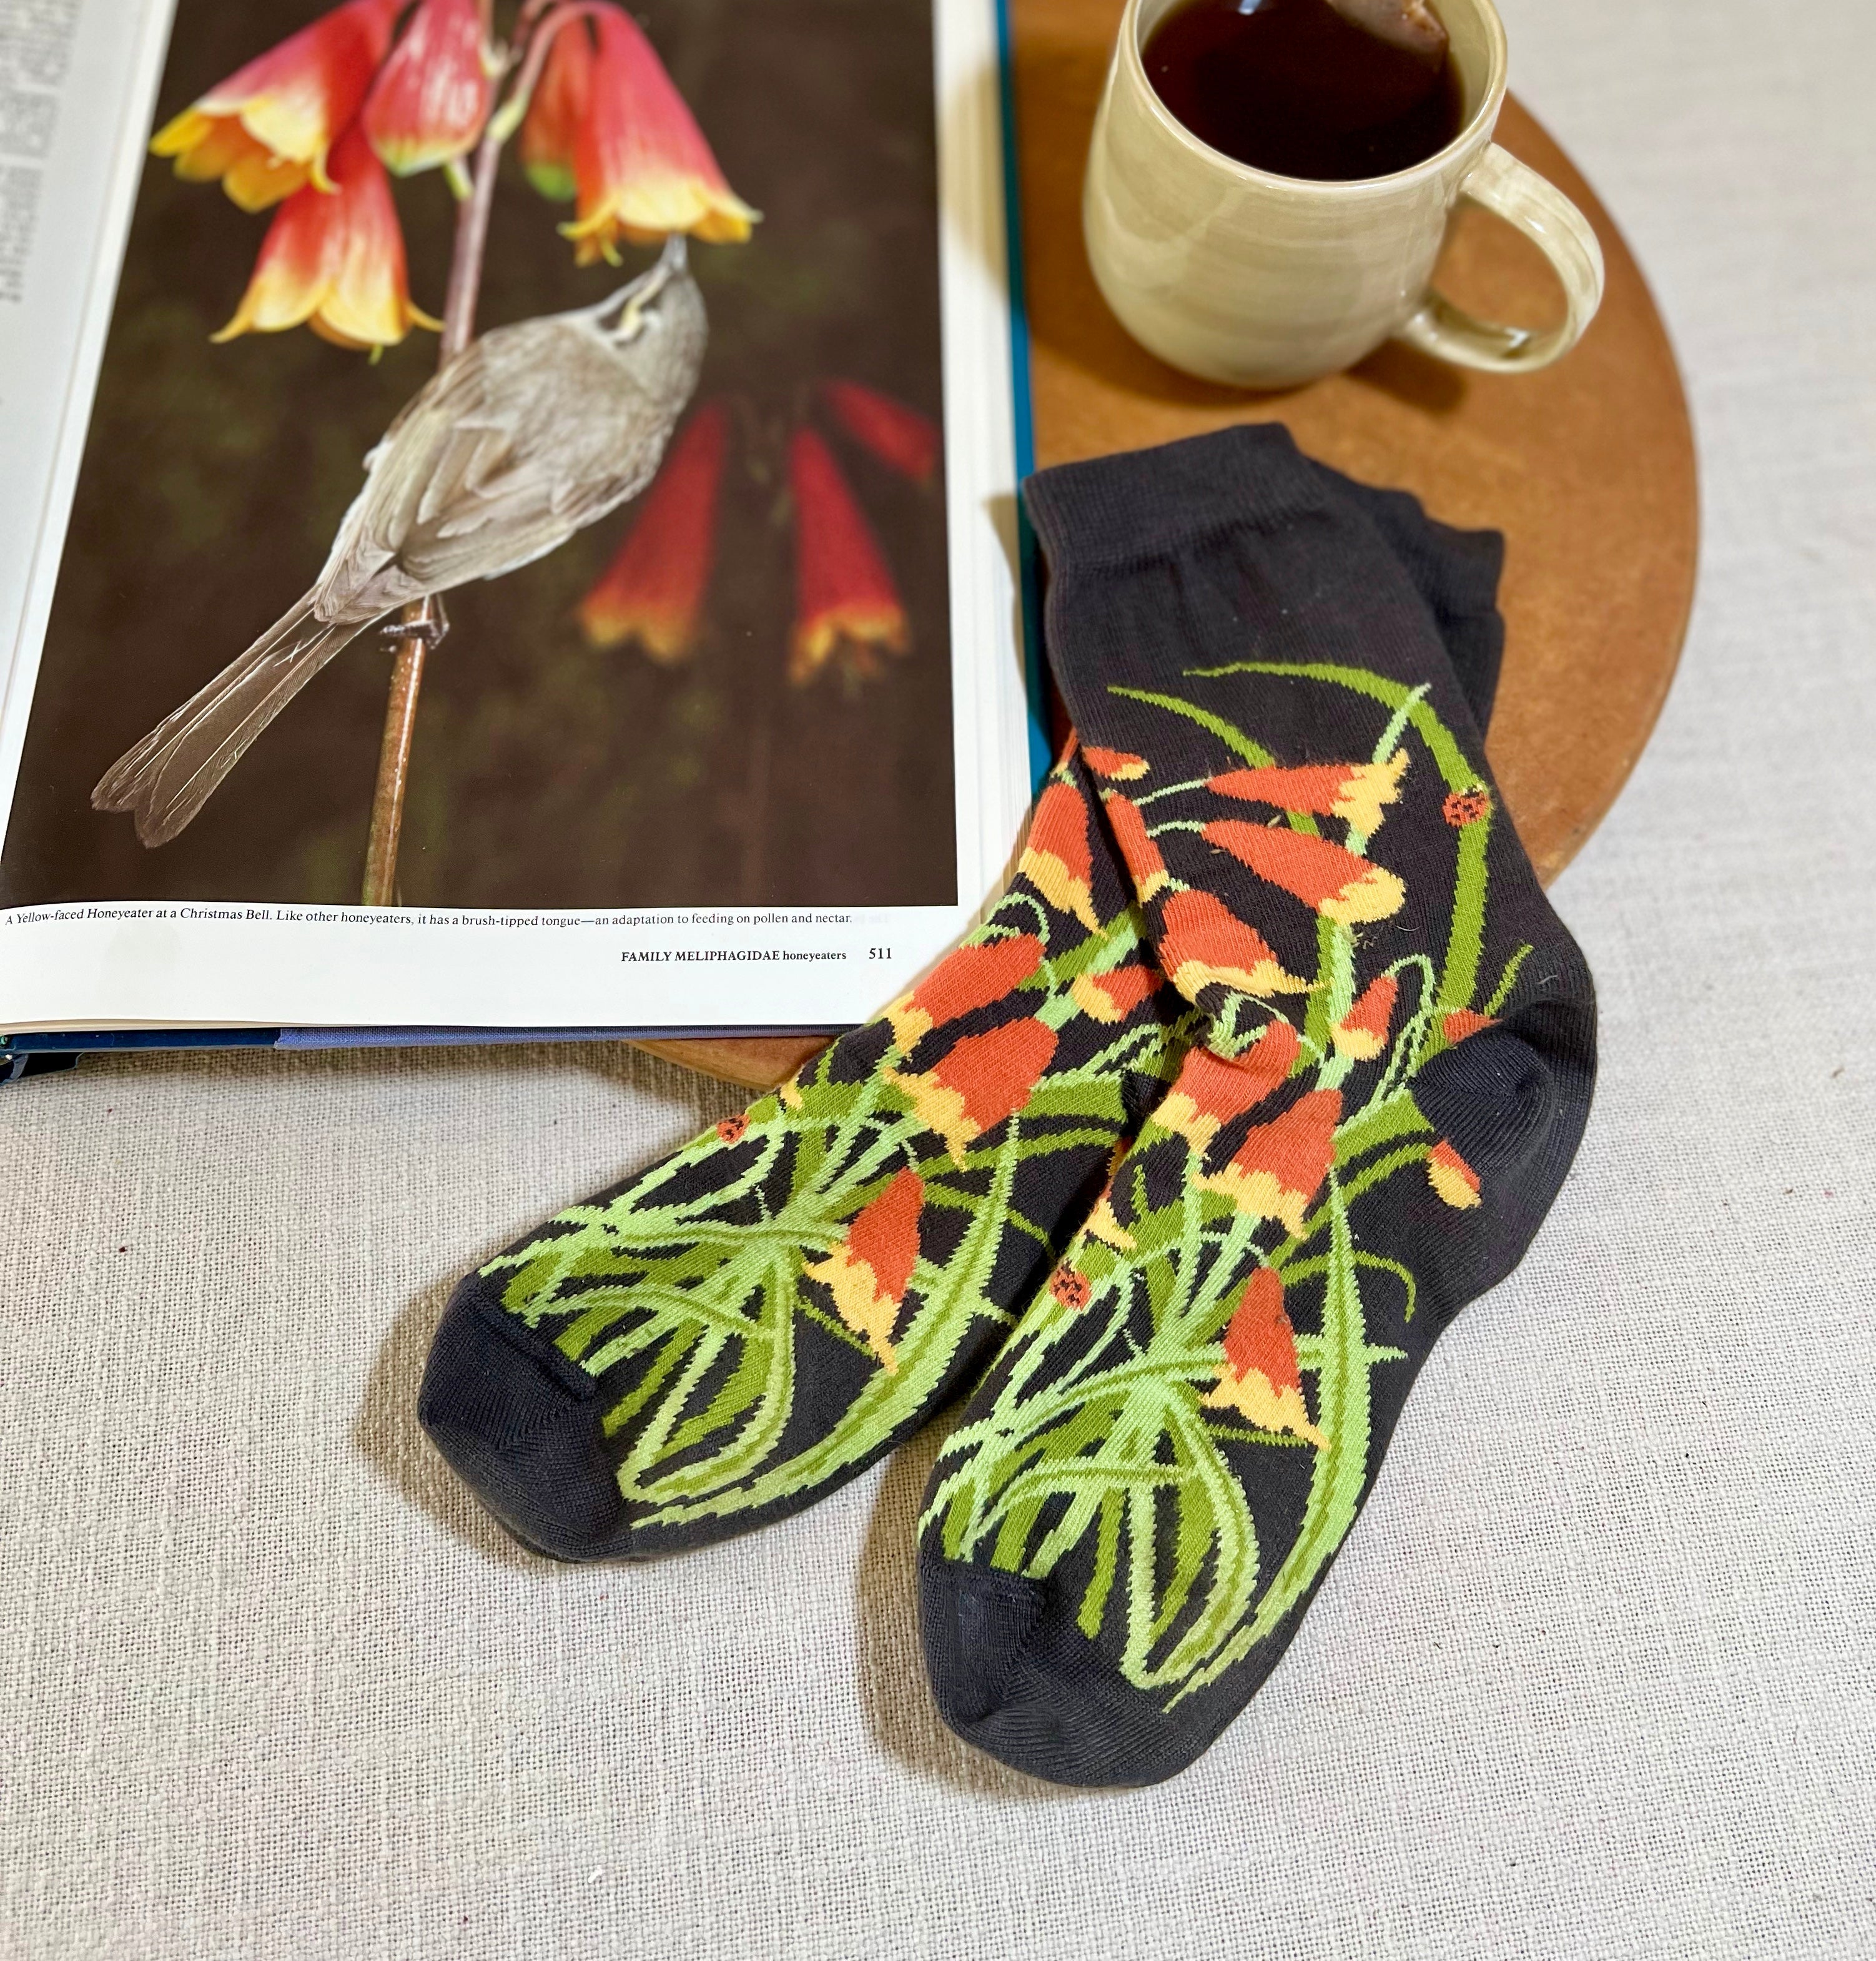 Pack of 4 Australian Botanical Women's Floral Socks